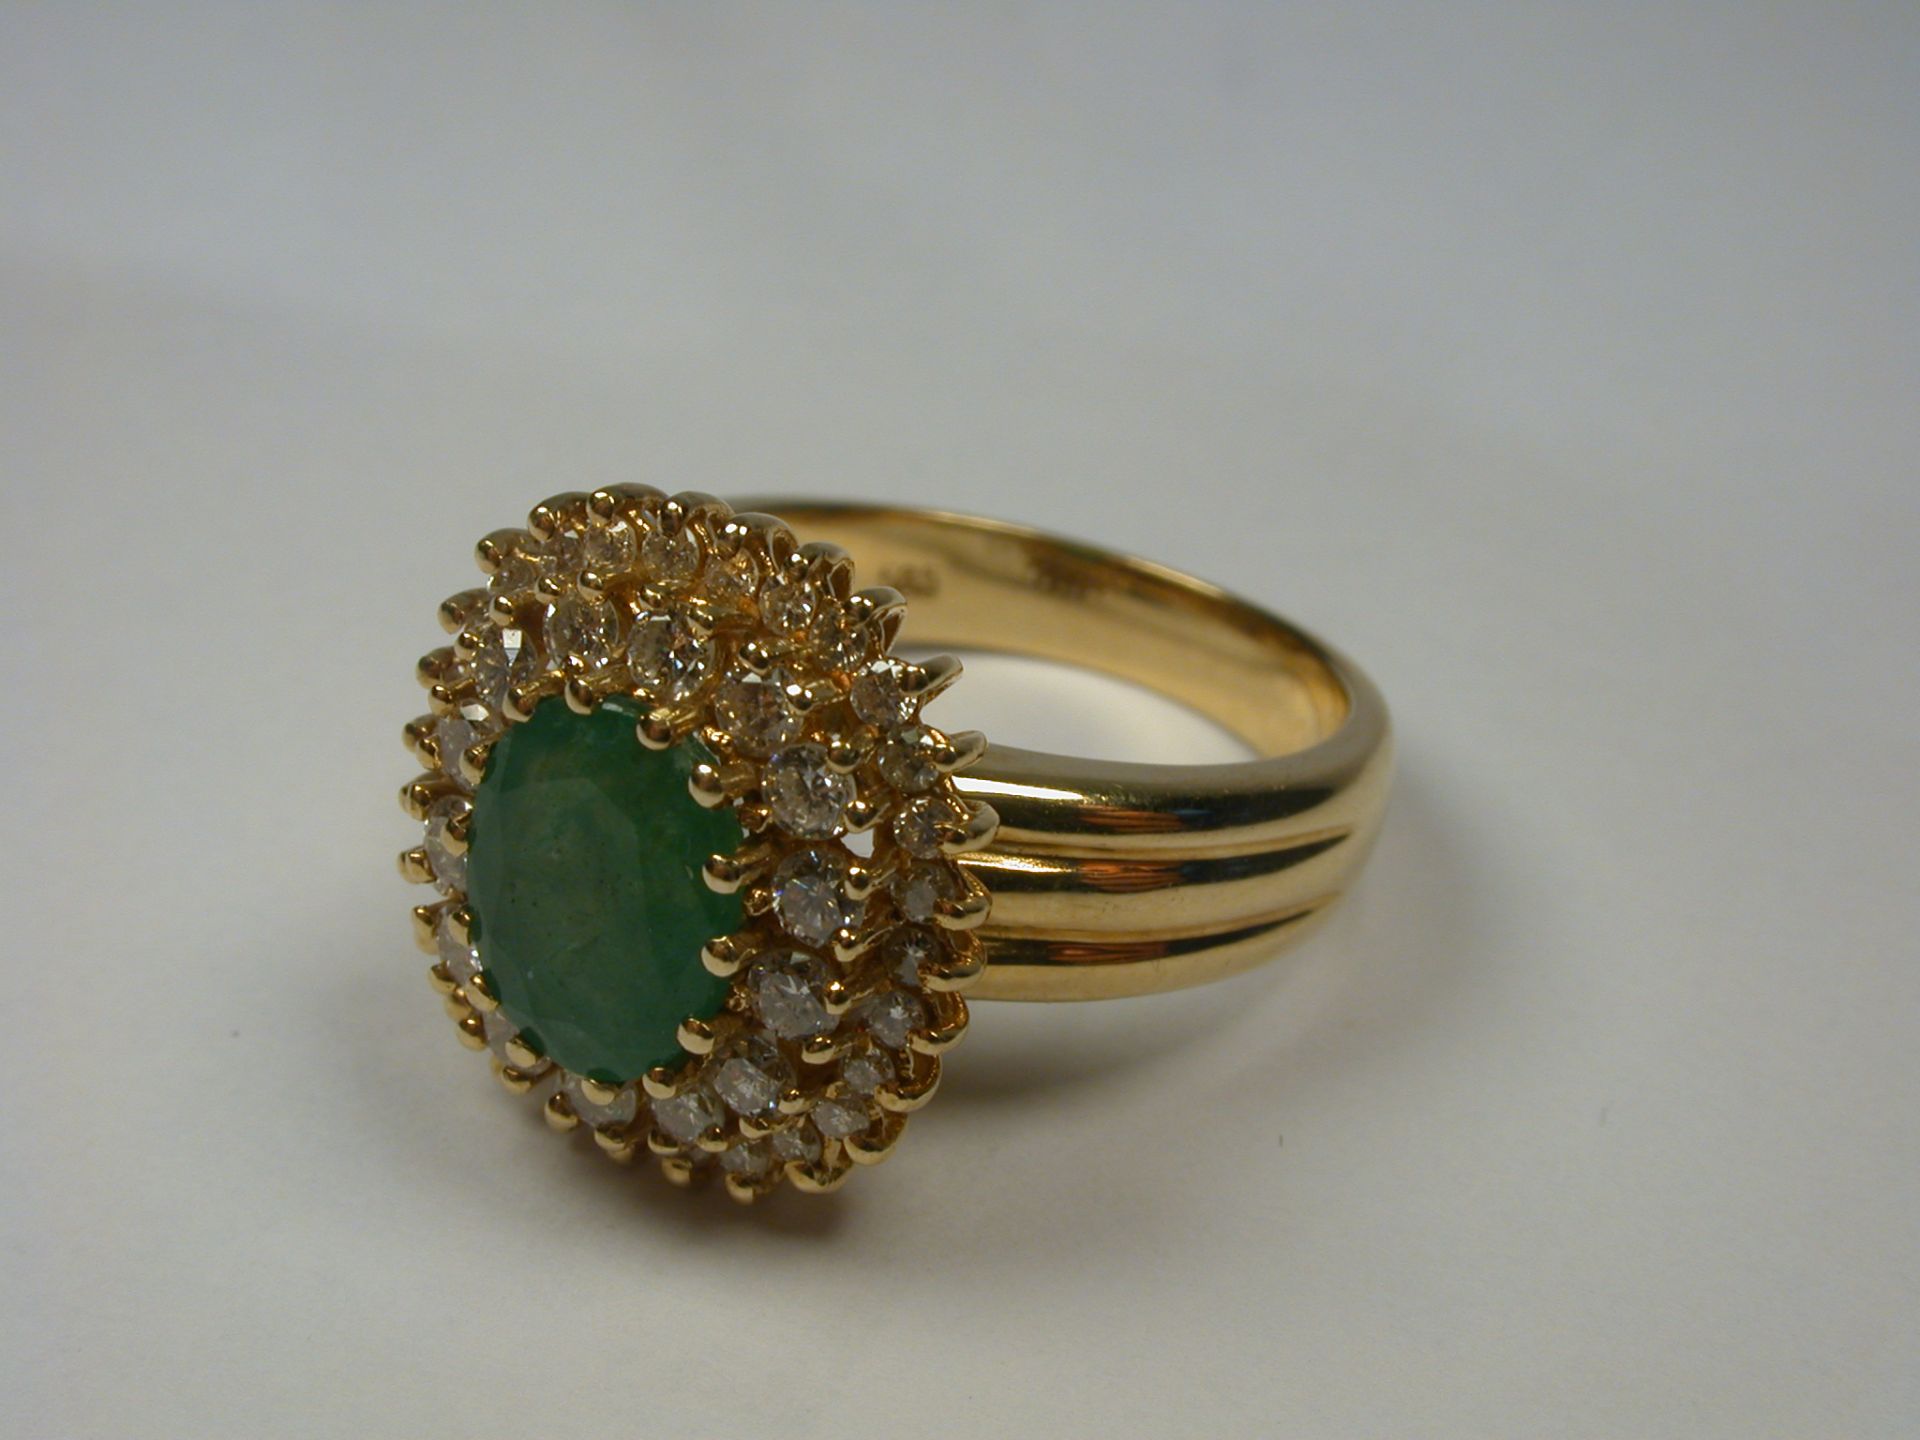 Ring GG 585, Smaragd, Diamanten - 7,48 Gramm